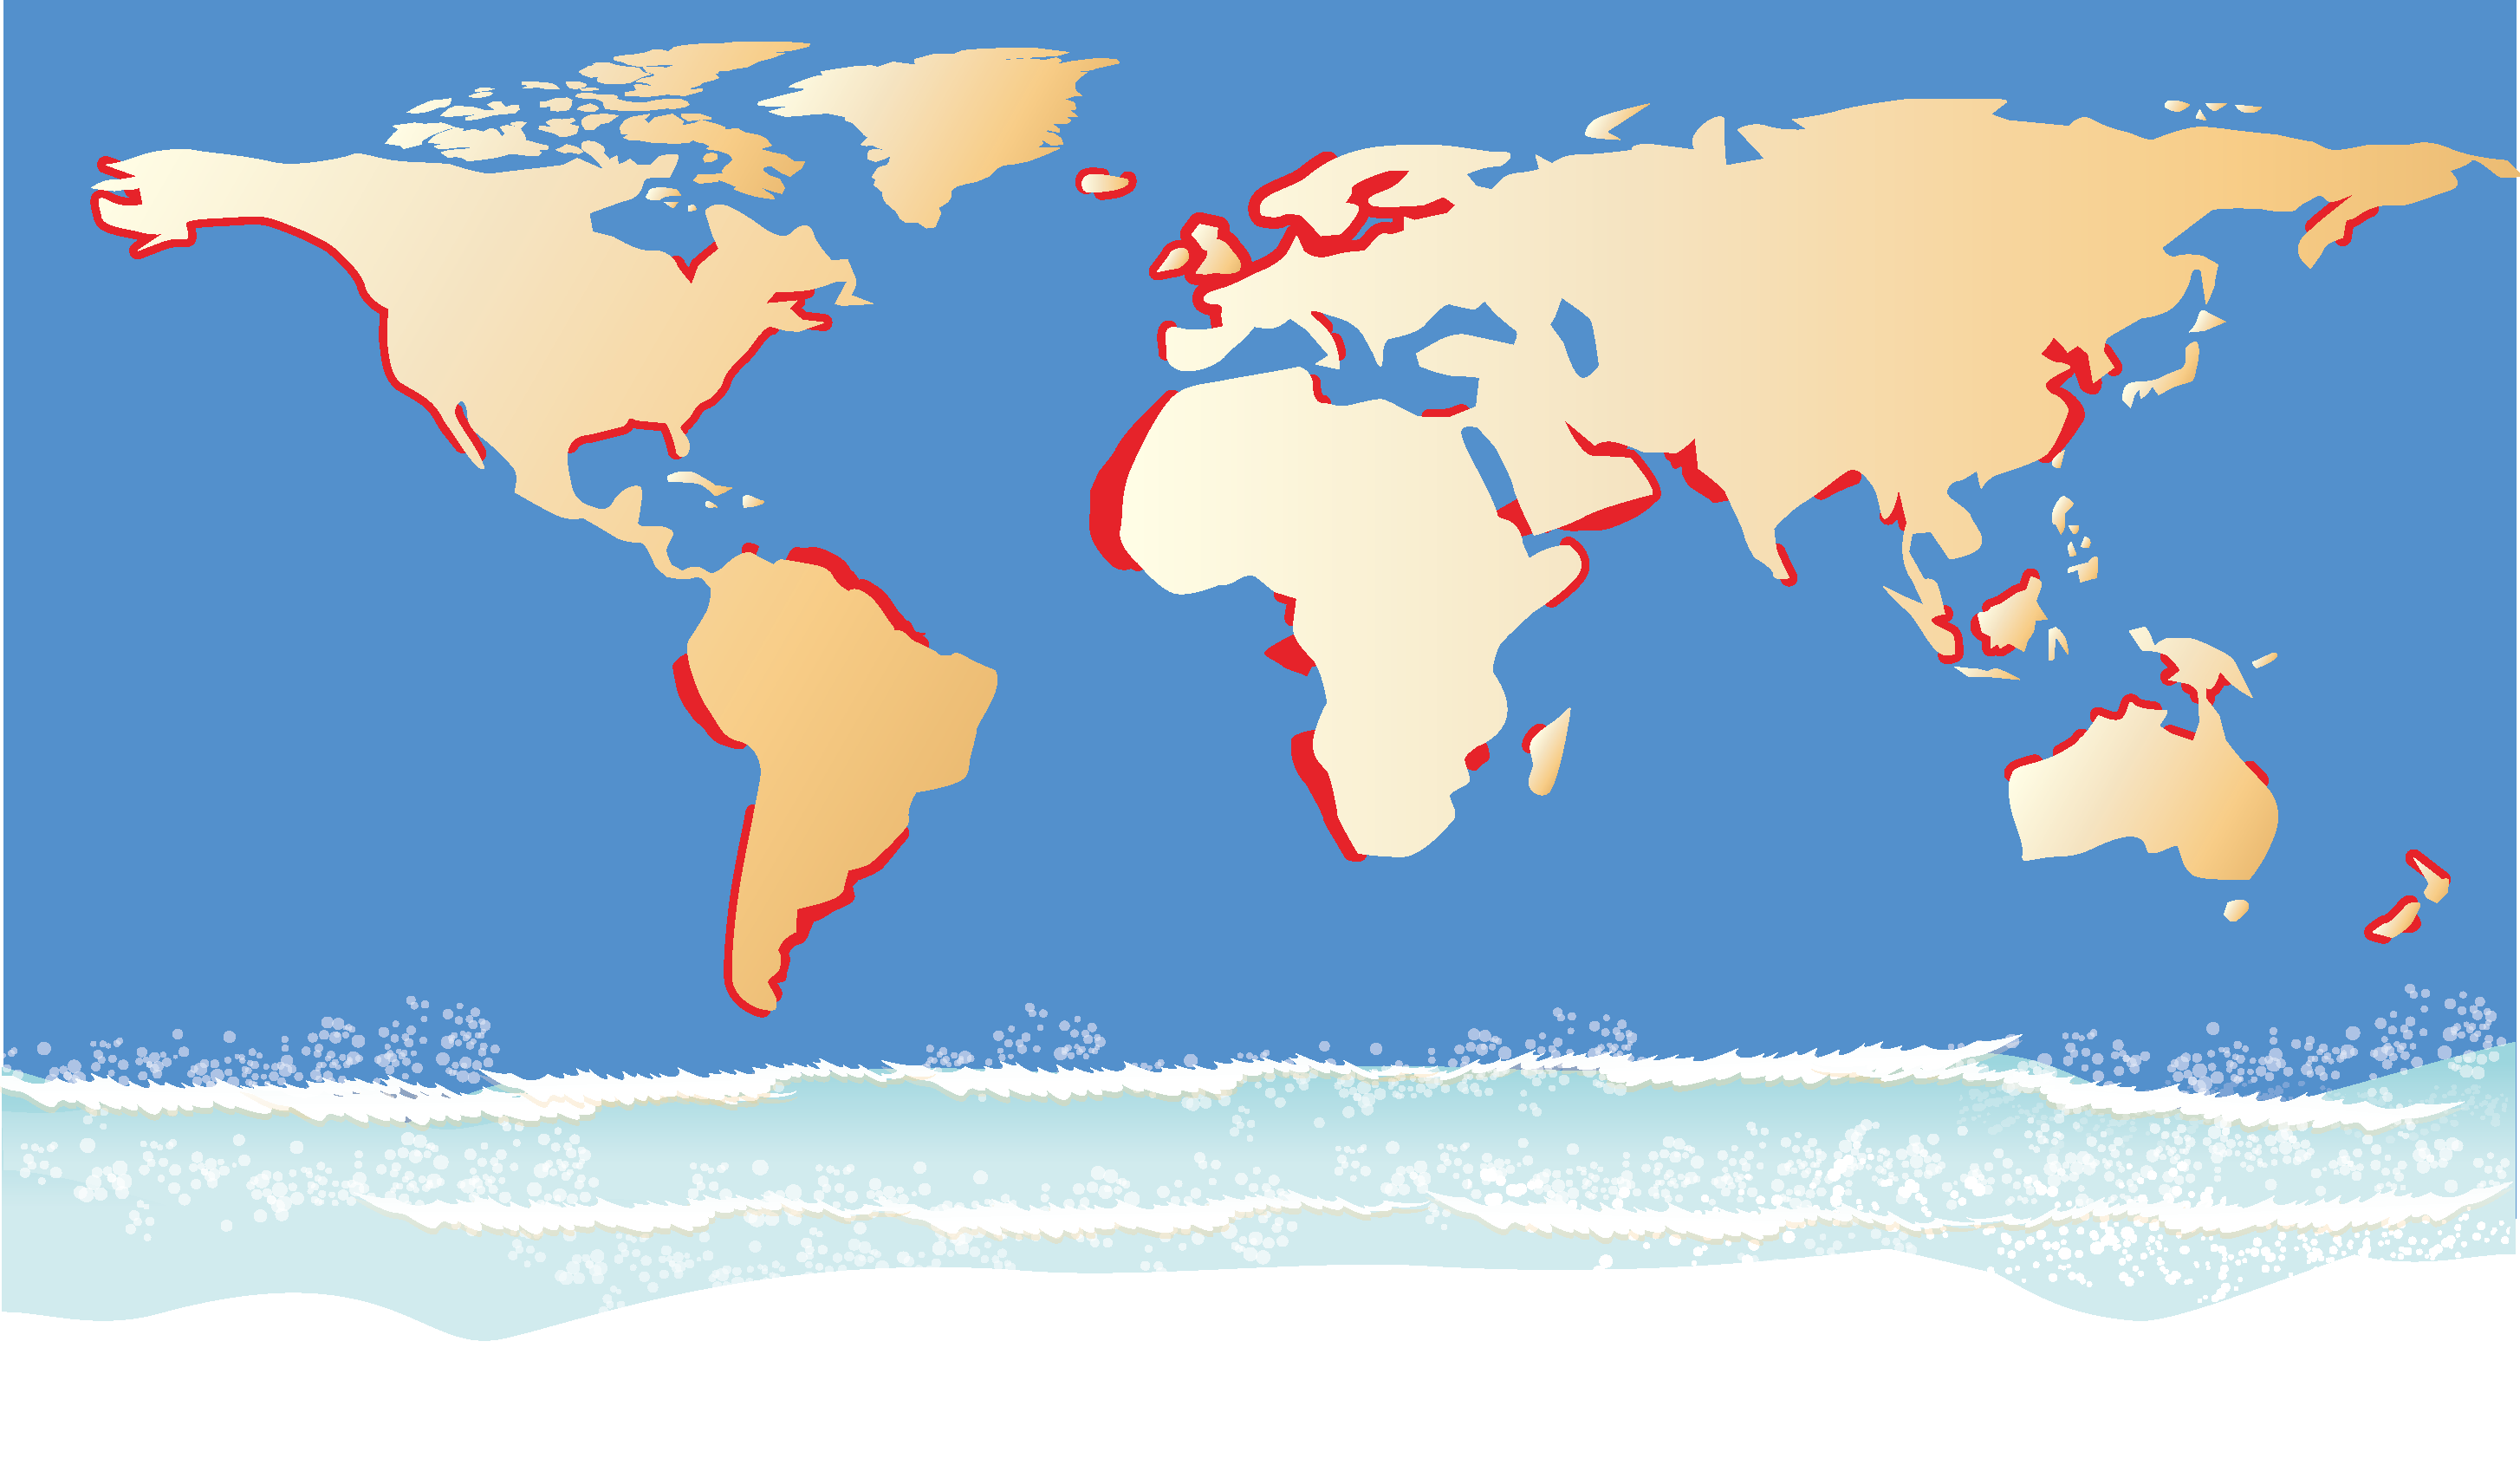 世界各地的部分沿海均因為受到湧升流的影響，形成良好的漁場，但有湧升流的海域只占海洋面積的1%。